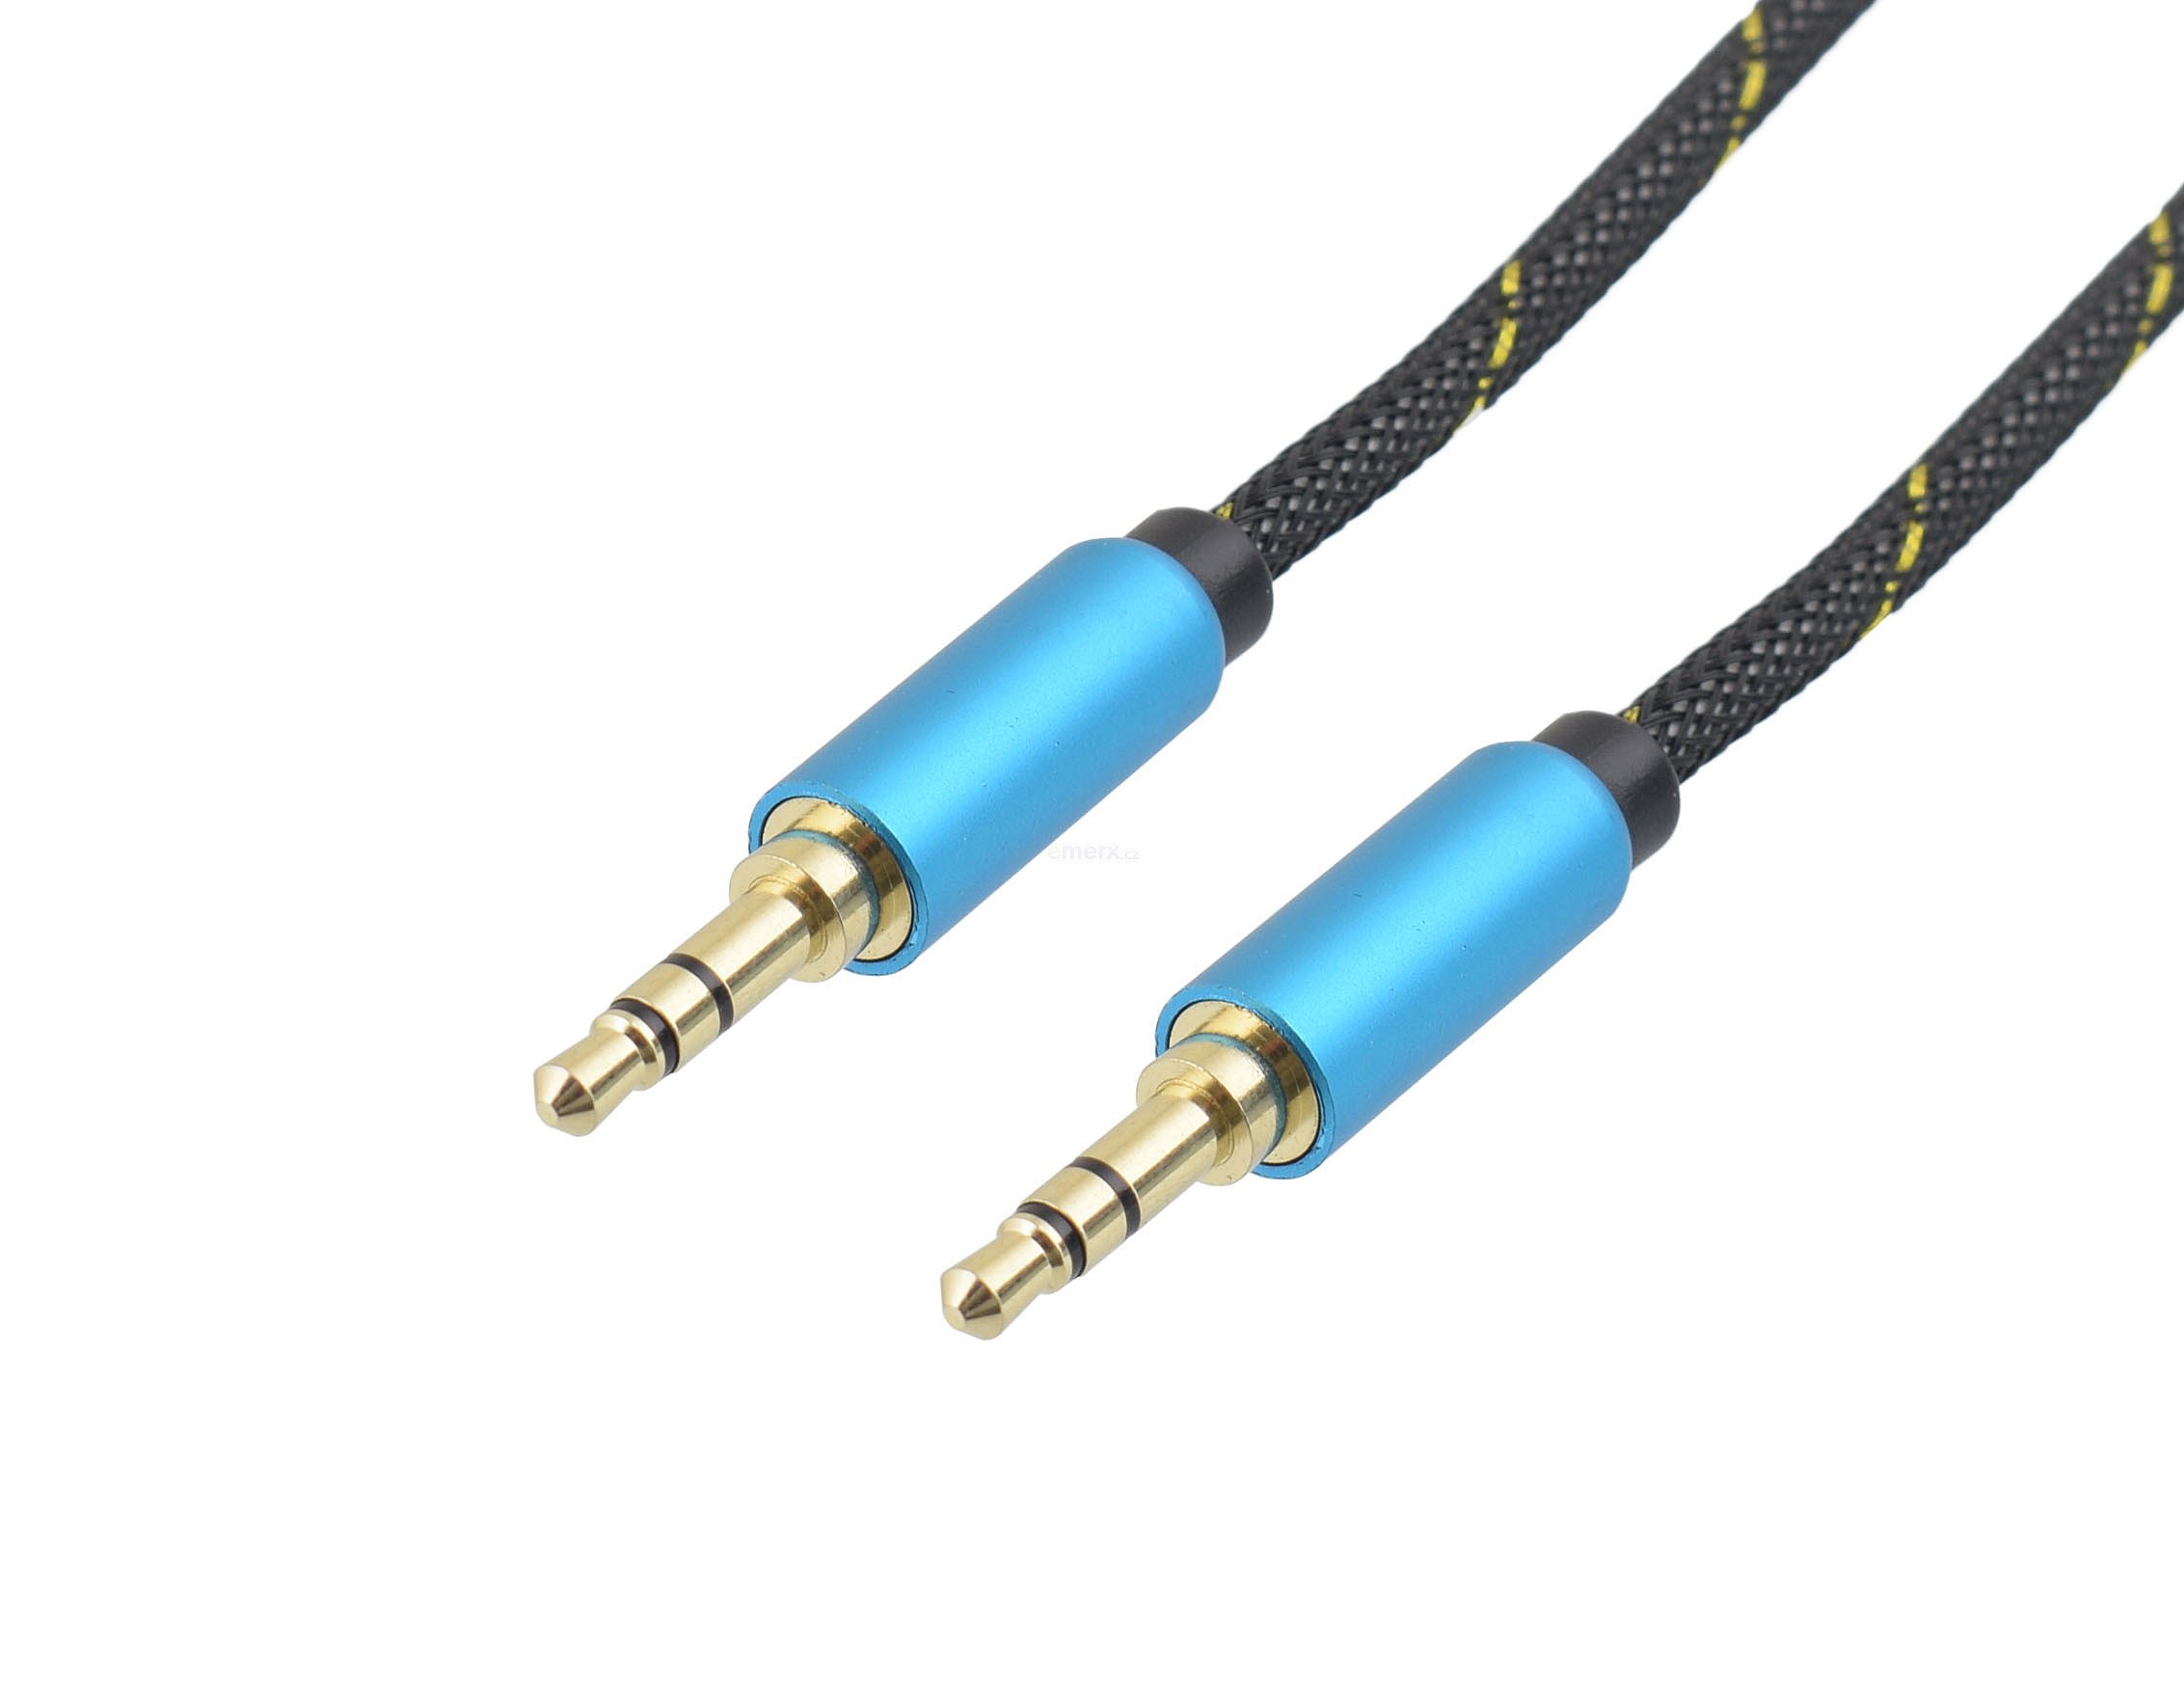 Propojovací audio HQ kabel s textilním opletem a kovovými konektory JACK 3,5mm STEREO vidlice na JACK 3,5mm STEREO vidlice, 1m. (HS-701-1)